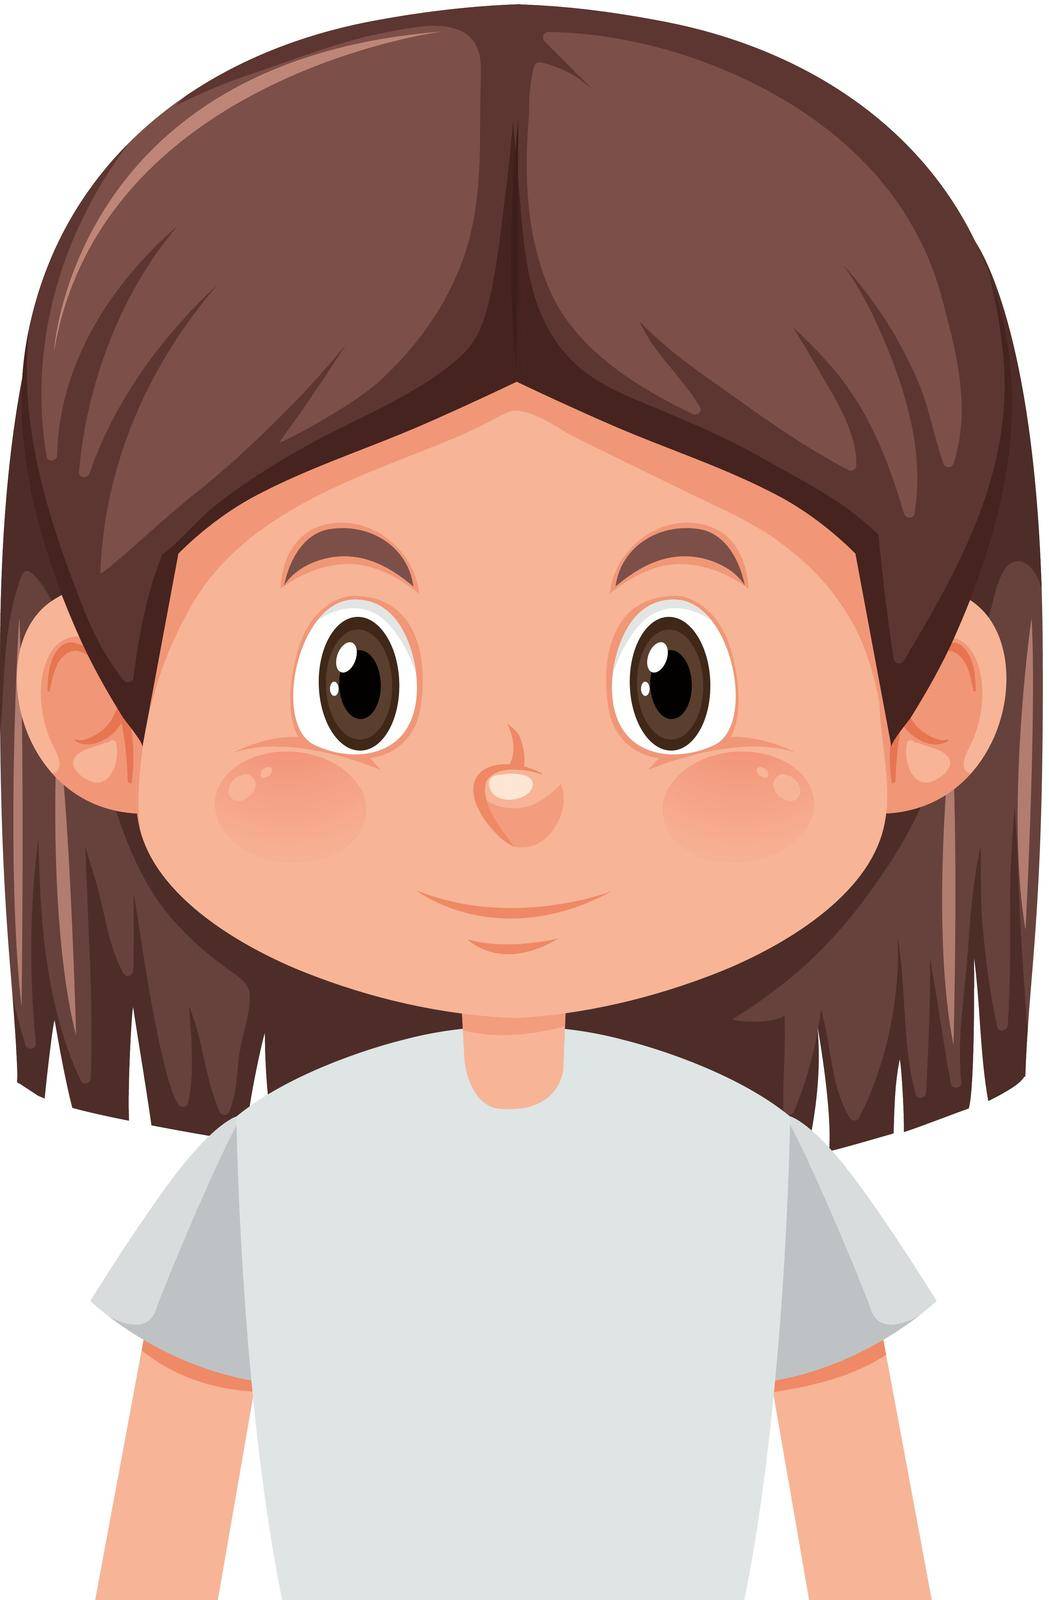 A brunette girl character illustration